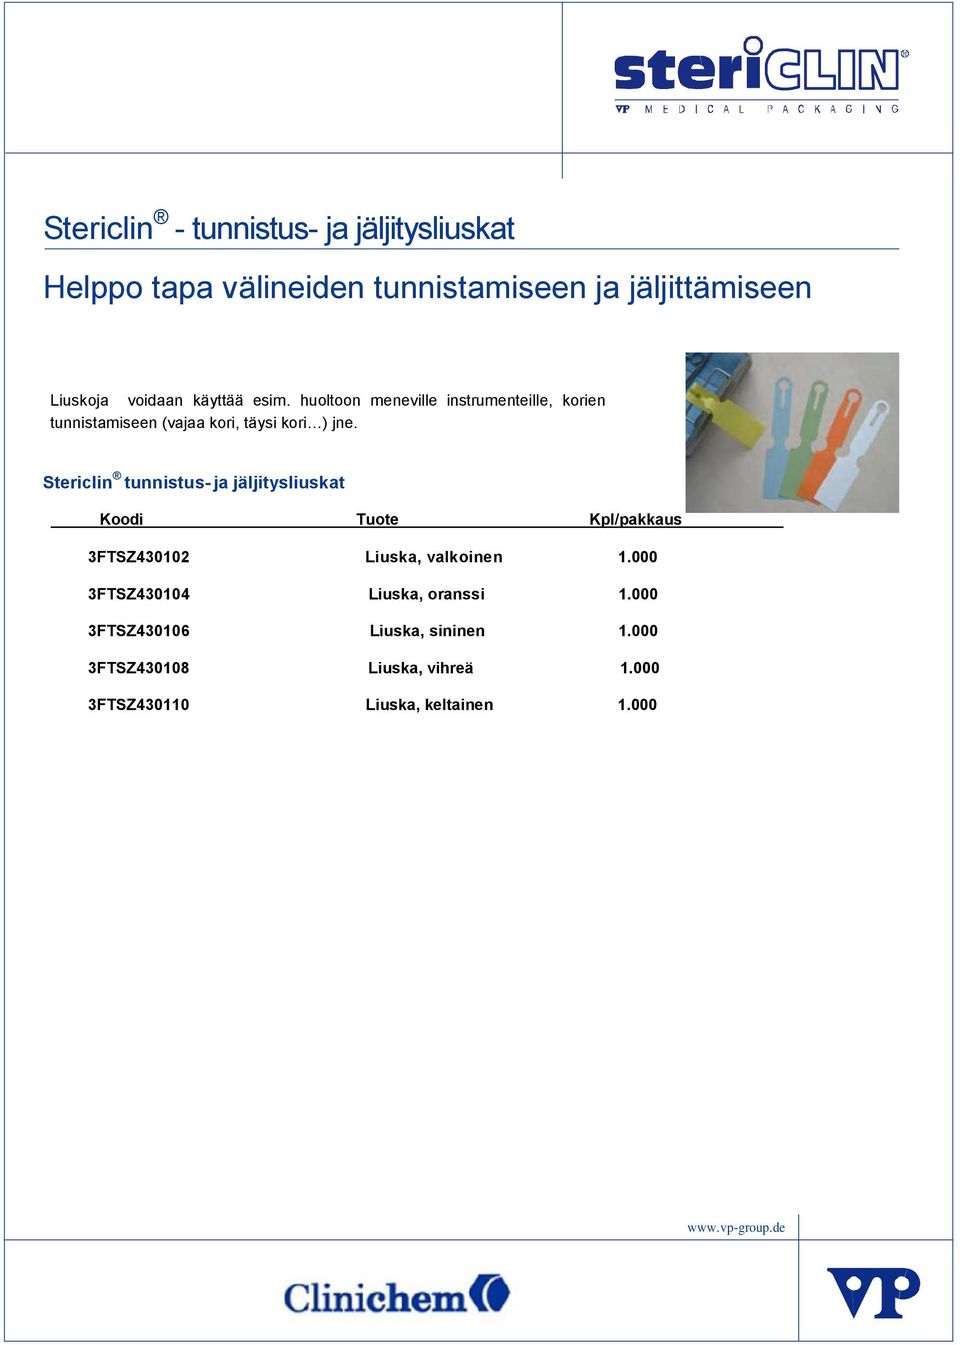 Stericlin tunnistus- ja jäljitysliuskat Koodi Tuote Kpl/pakkaus 3FTSZ430102 Liuska, valkoinen 1.